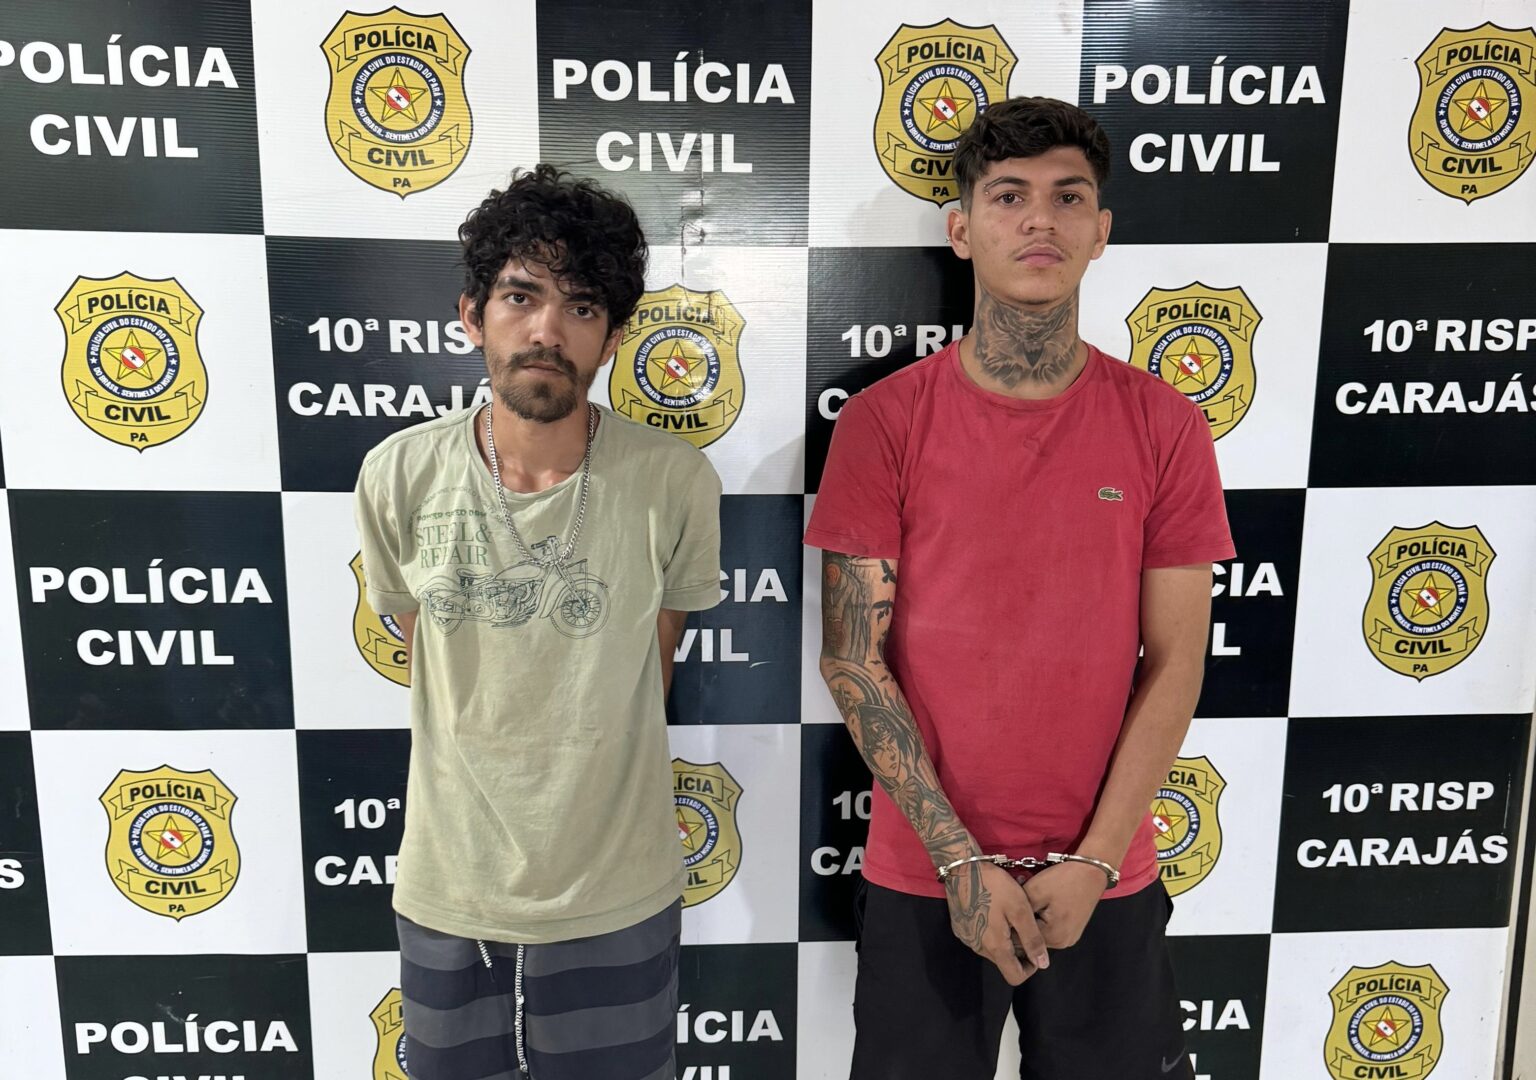 VÍDEO: Polícia Civil prende dupla suspeita de assaltar motoristas de aplicativo em Marabá